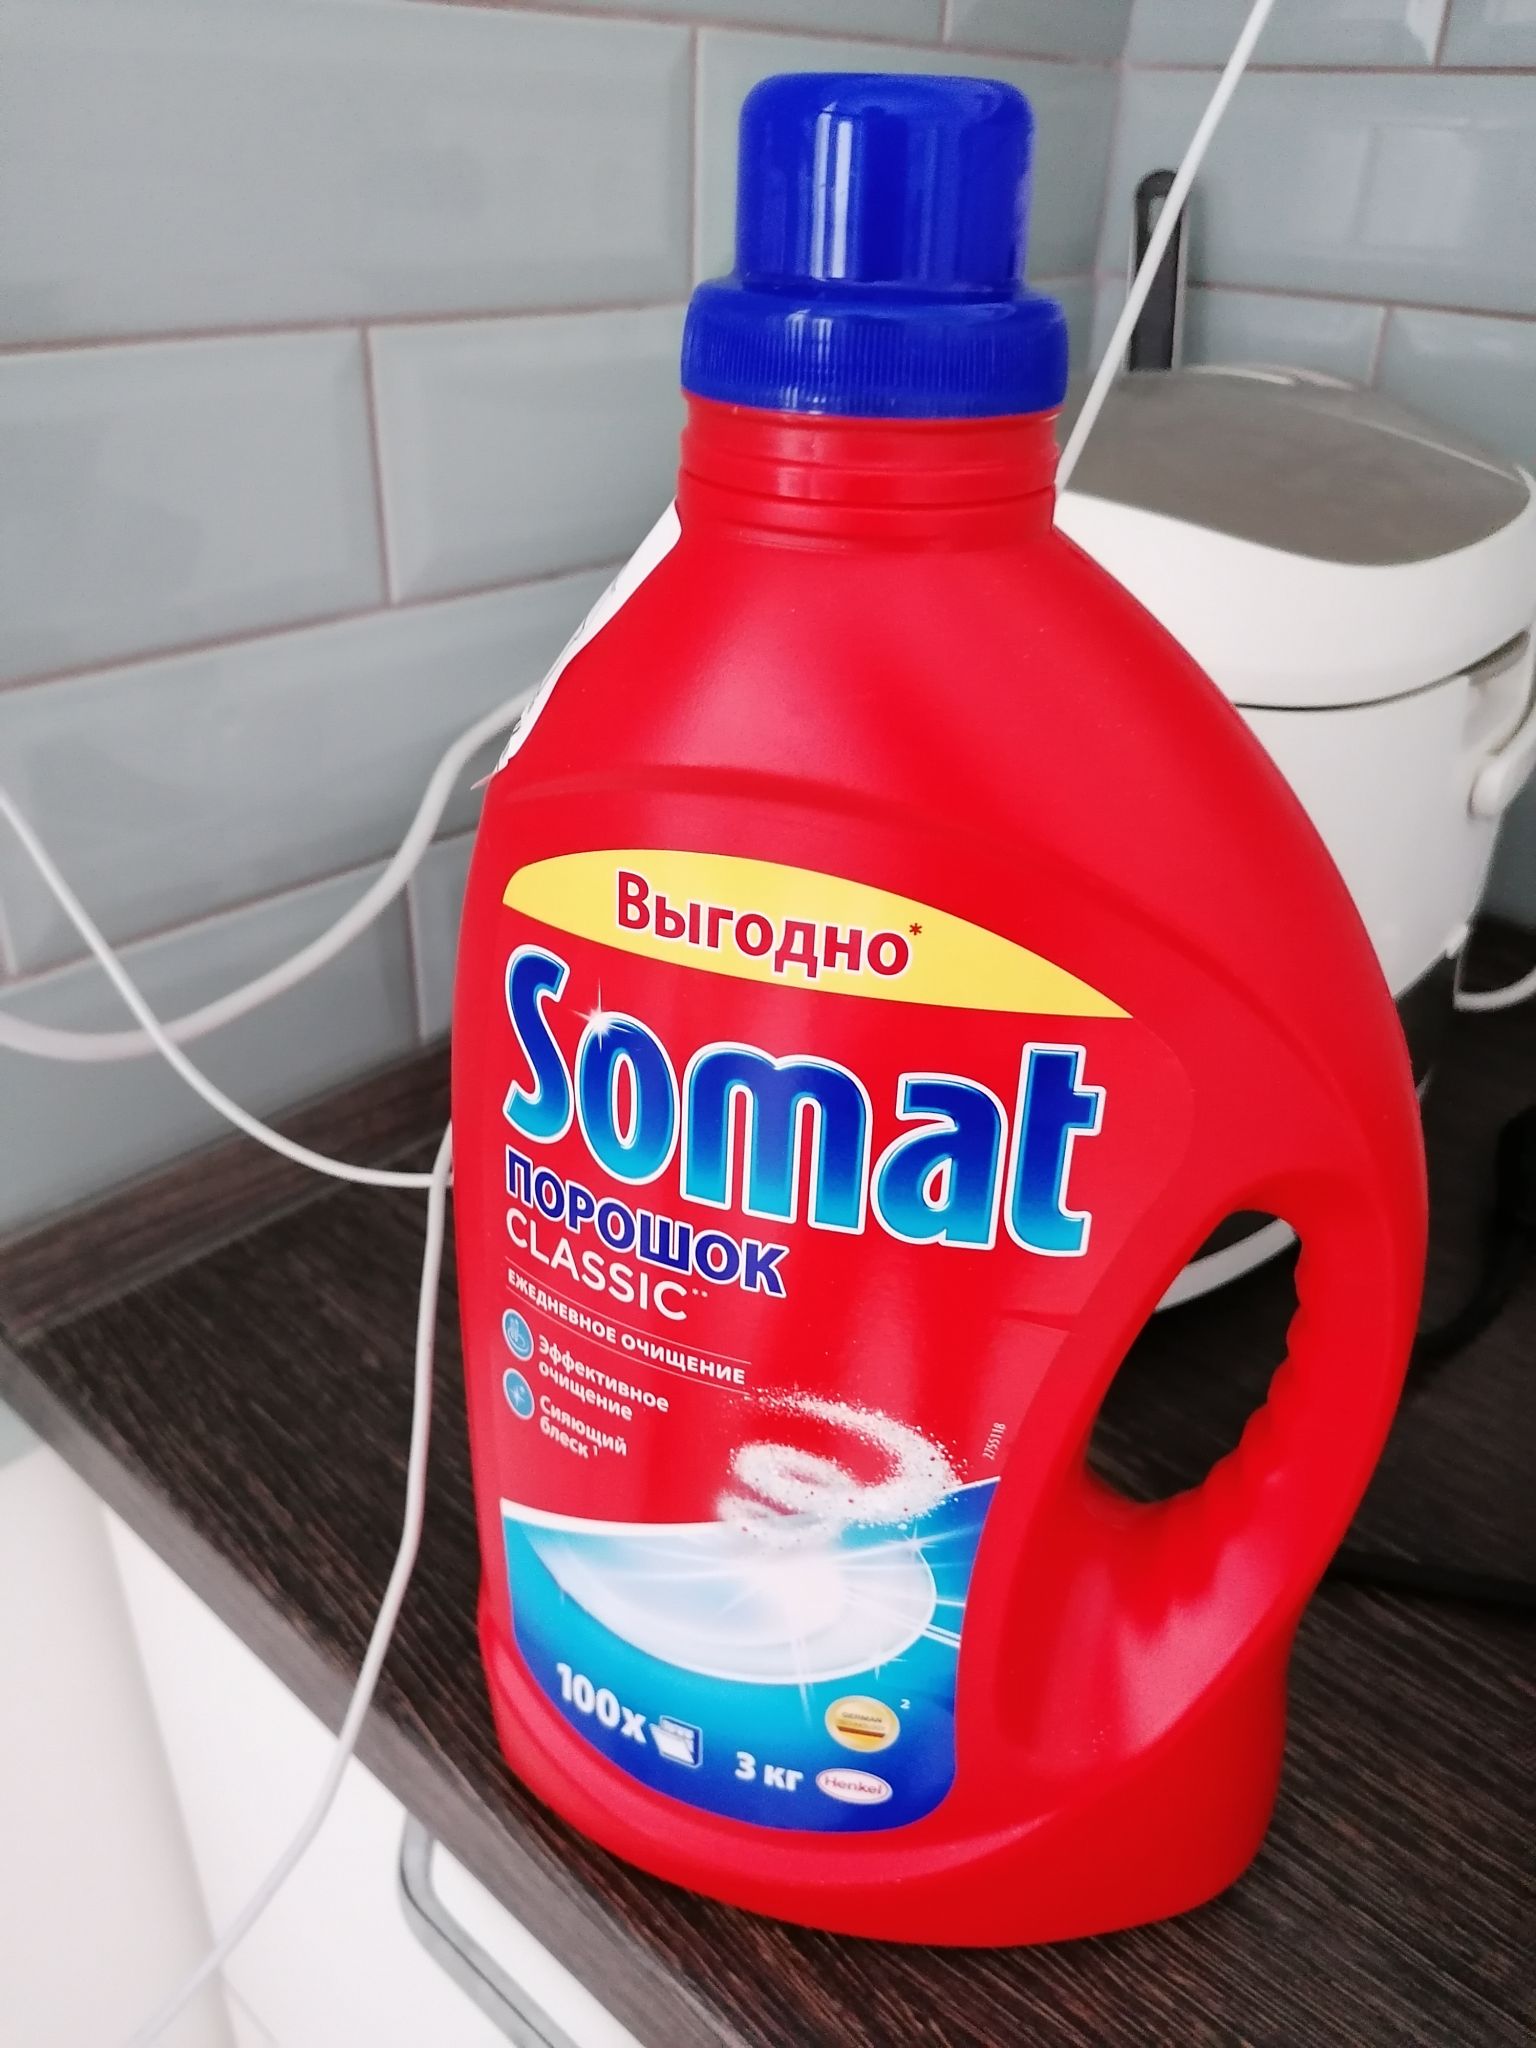 Порошок для посудомоечной машины 3 кг. Порошок для ПММ Somat 3кг. Порошок Somat 3 кг. Somat порошок для посудомоечных машин 3 кг. Порошок для посудомоечных машин Somat Классик.